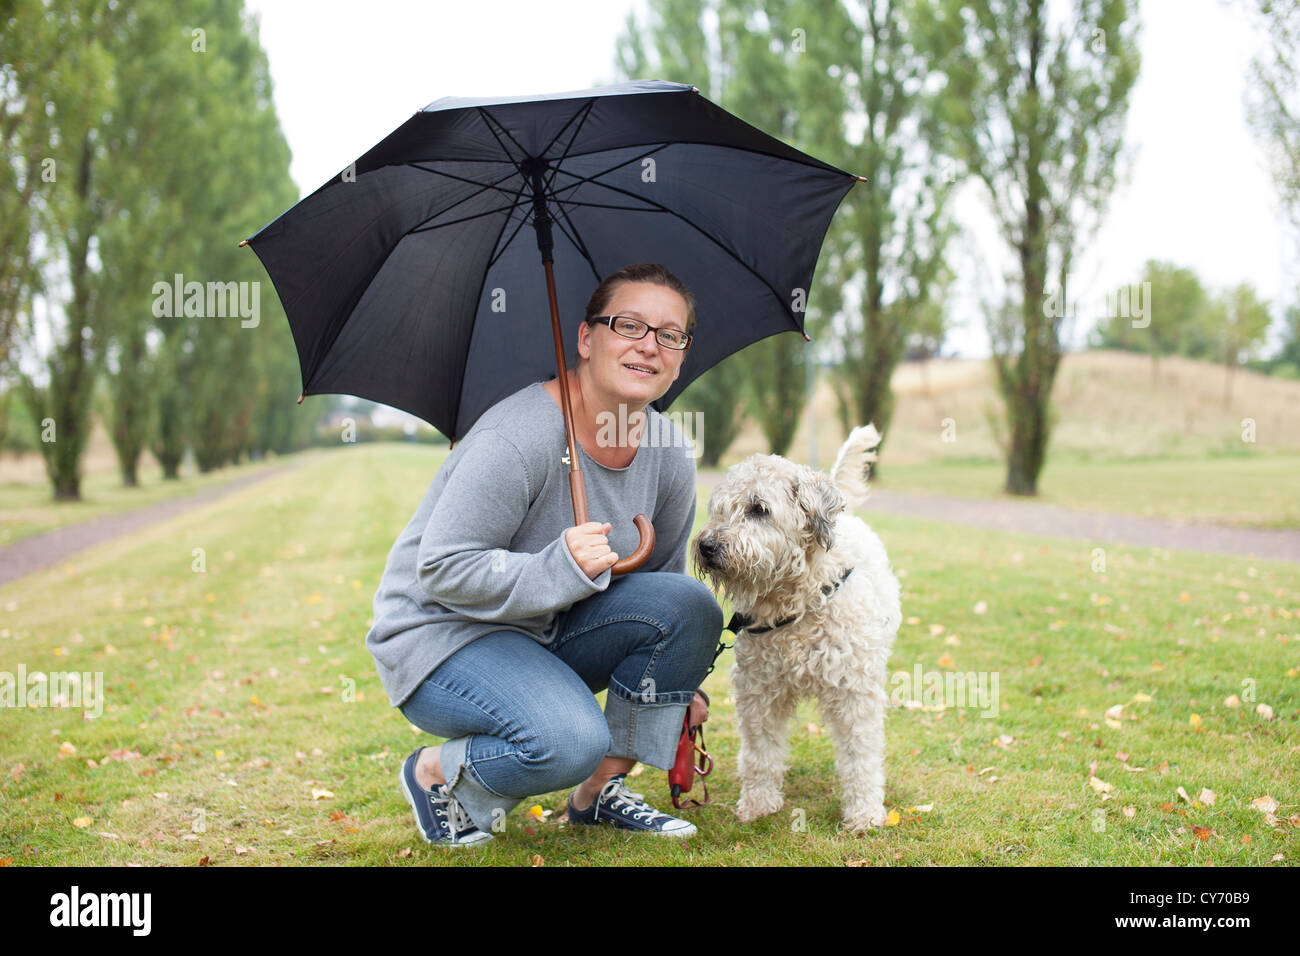 Frau und ihr Hund unter einem Regenschirm. Sie sucht mit einem freundlichen Lächeln in die Kamera. Kleidung ist leger. Stockfoto